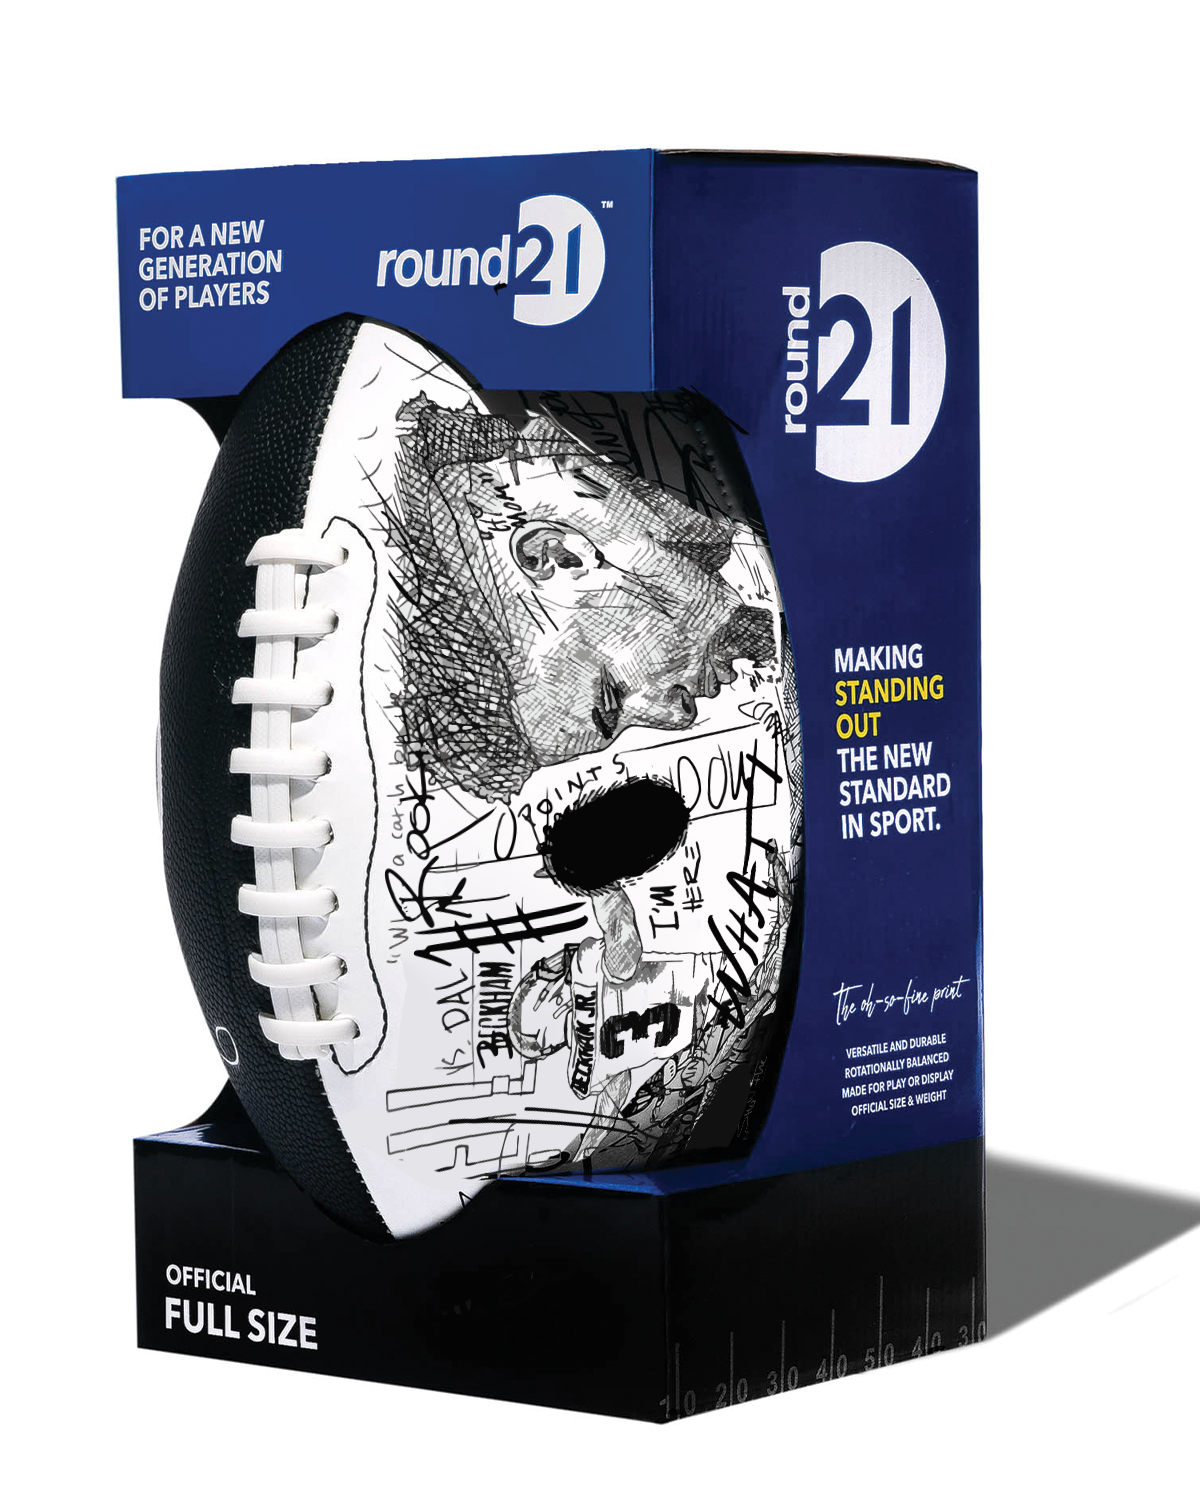 Official round21 x NFLPA Football - Odell Beckham, Jr.